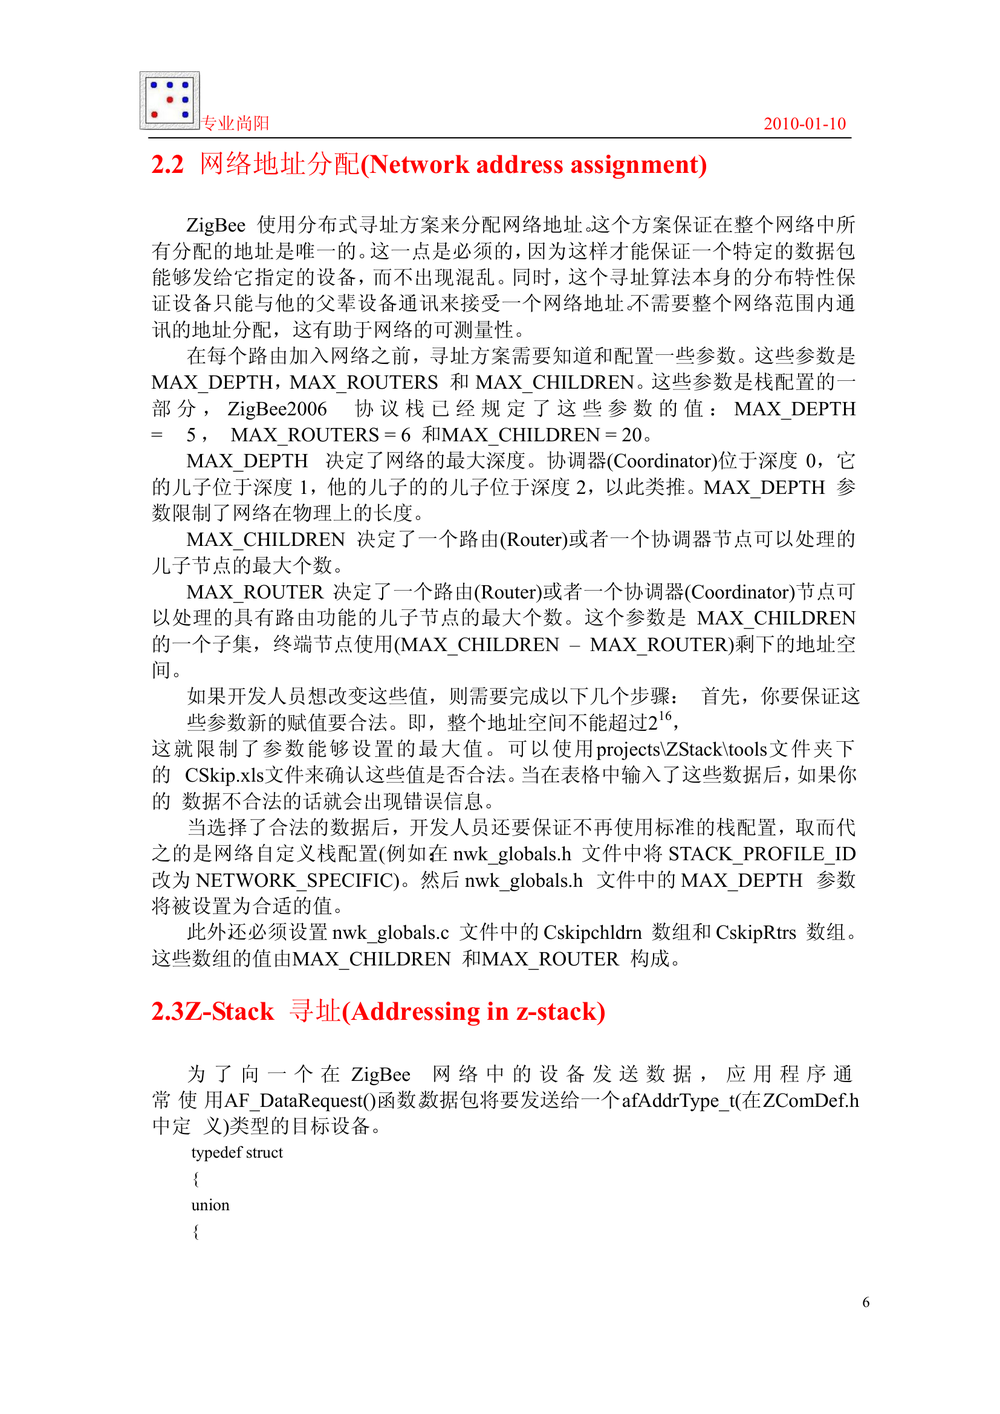 ZigBee 2006协议栈_开发指导手册_专业尚阳.PDF-第6页.png